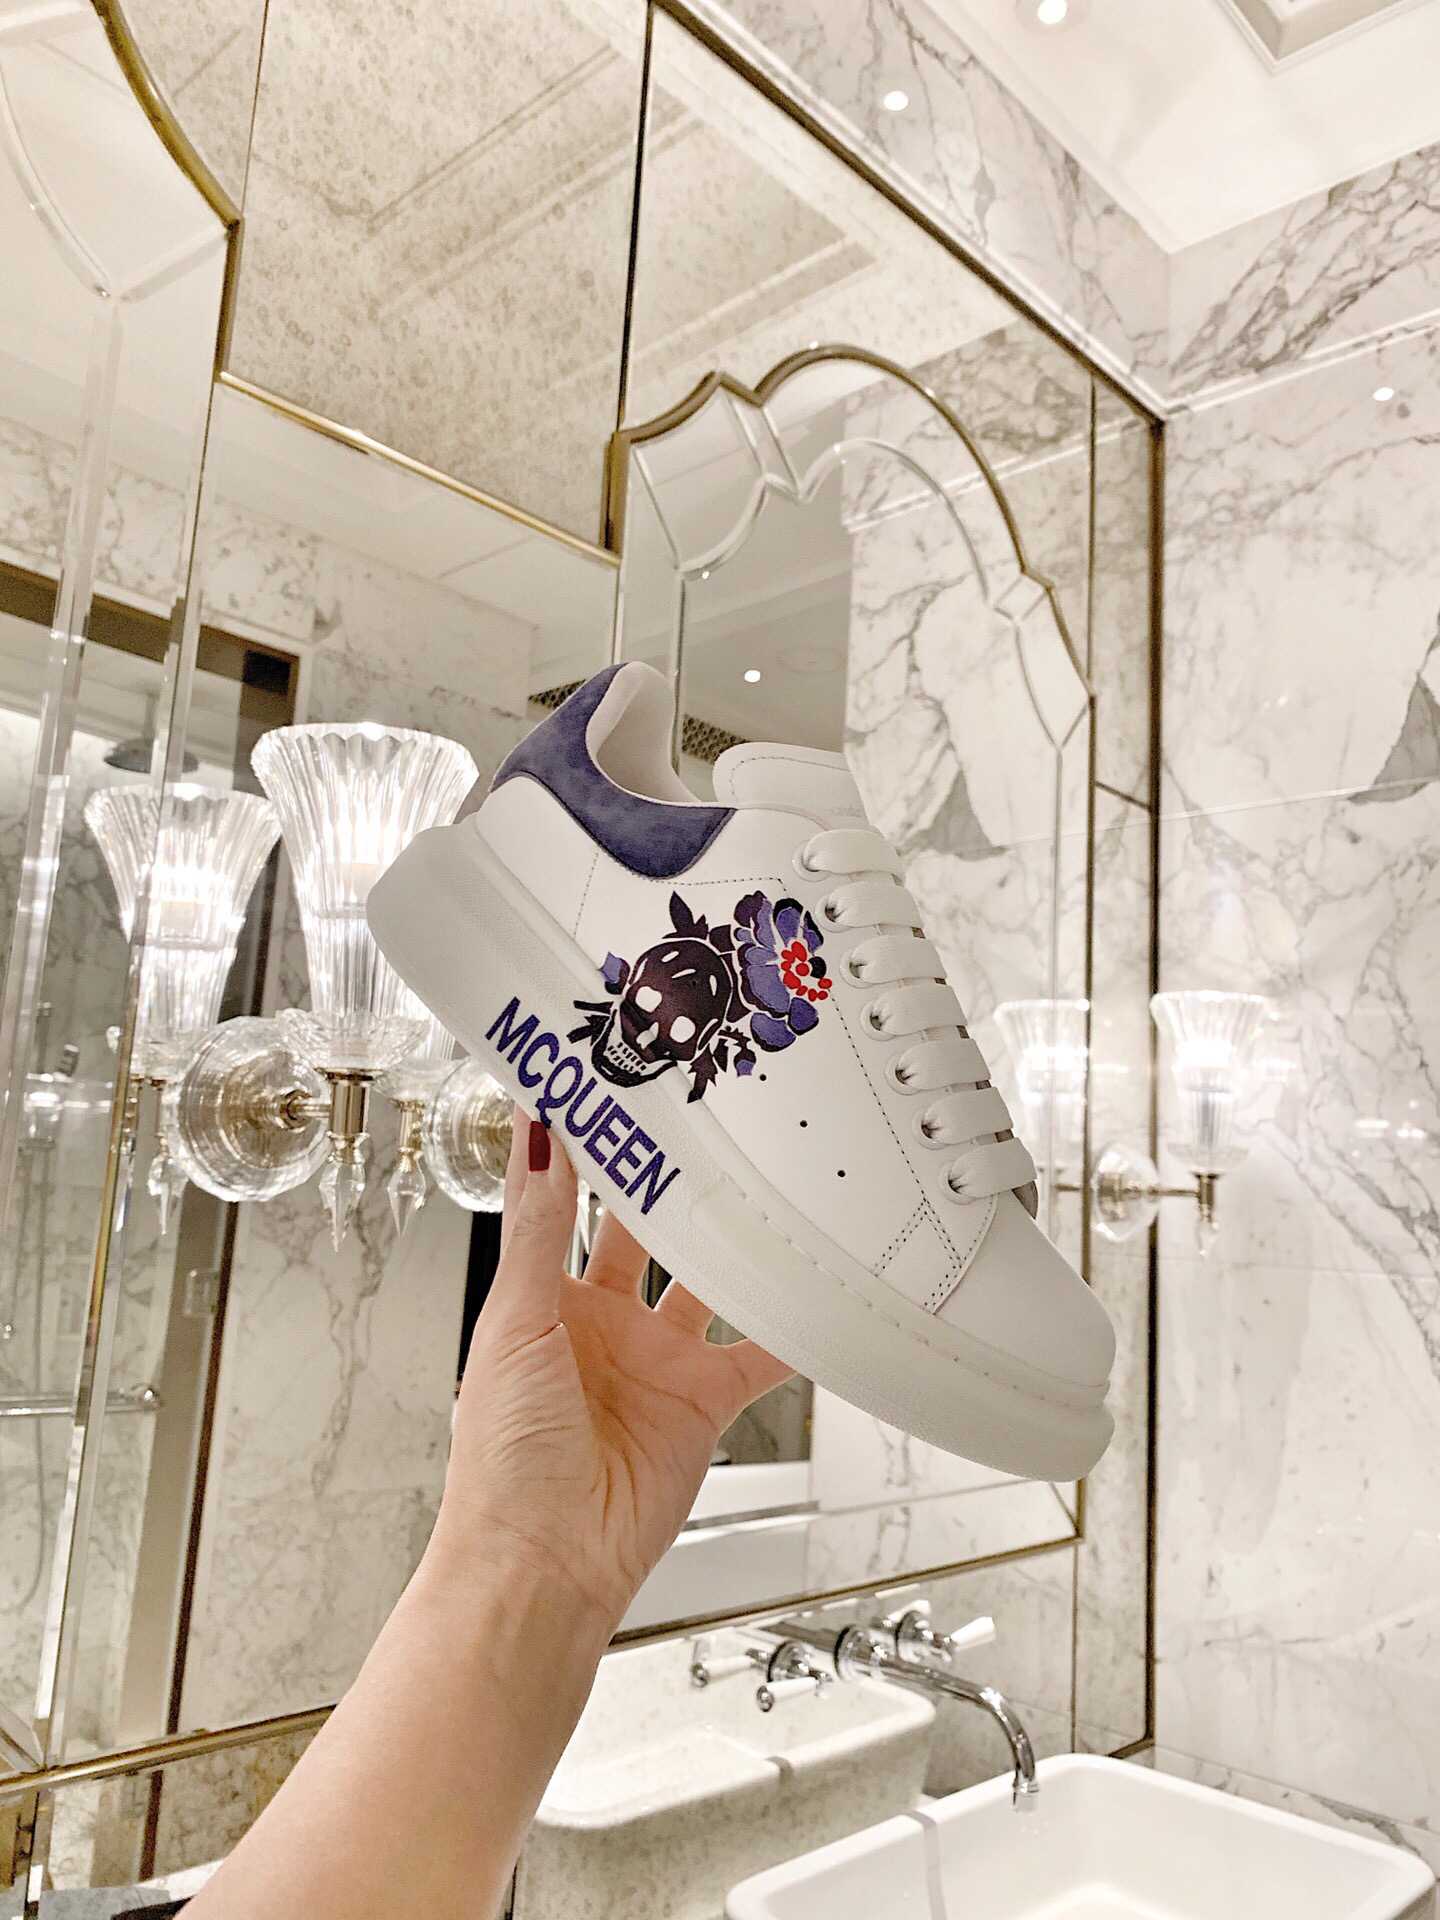 原版麦昆男士运动鞋 麦昆专柜最新3D打印松糕厚底系列小白鞋 原版麦昆男士运动鞋商城 